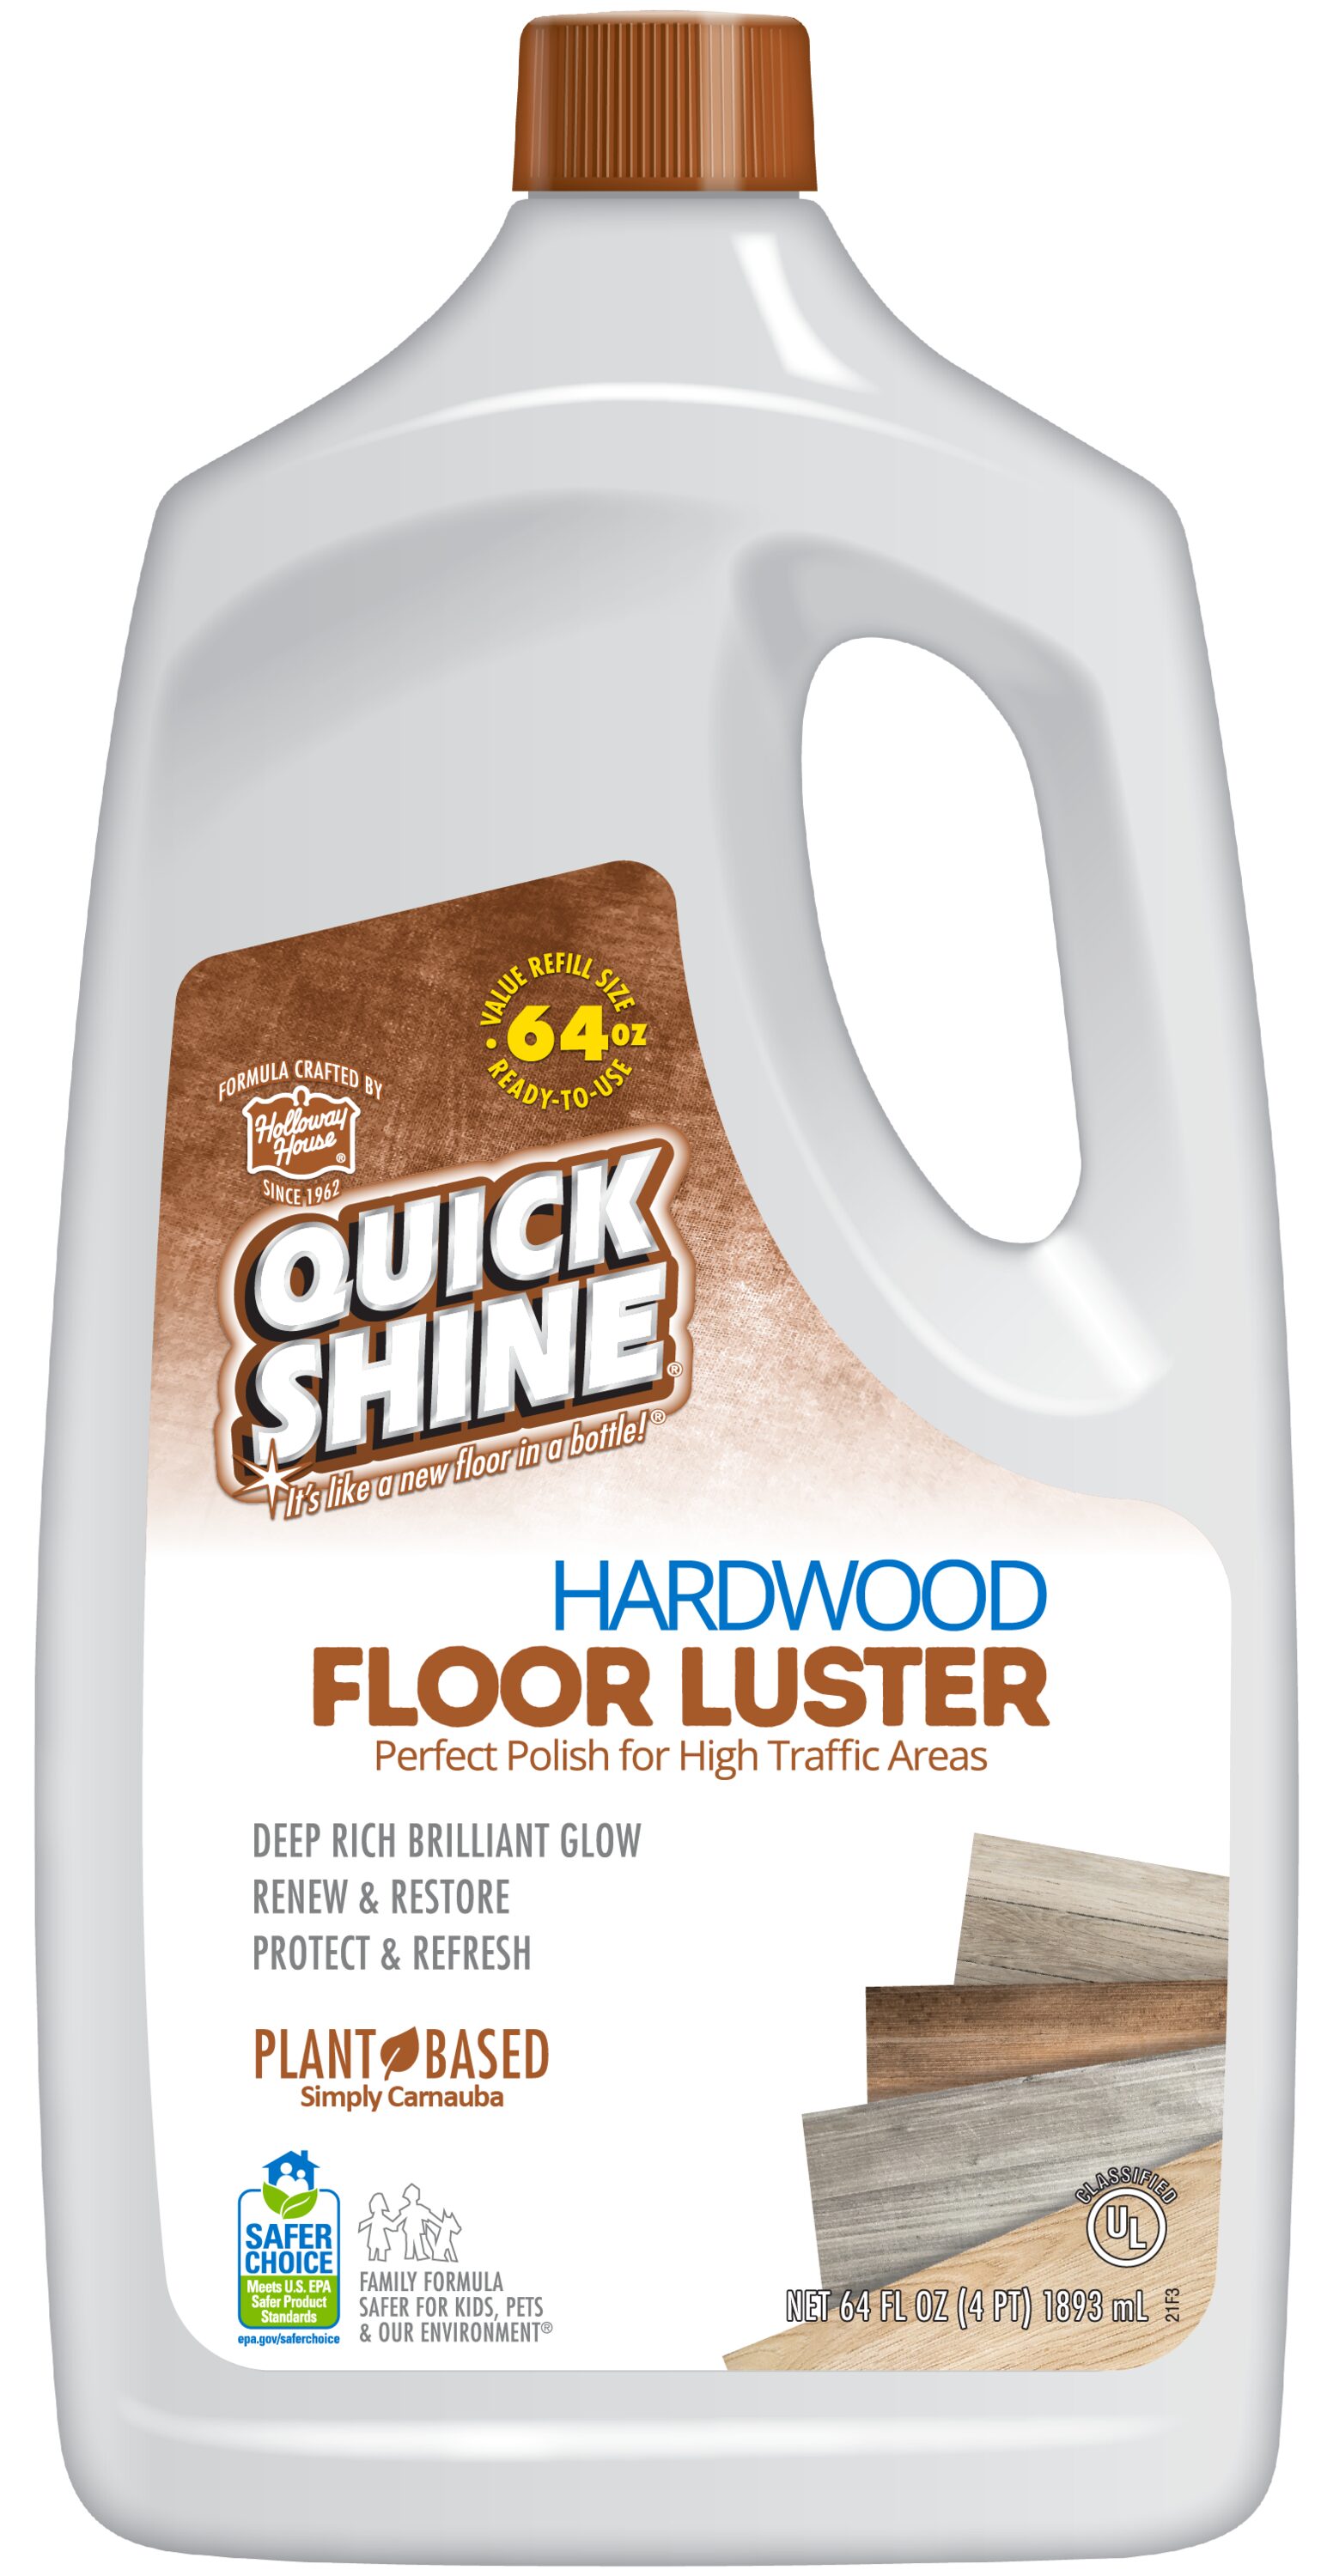 SC Johnson Fine Wood Paste Wax, 16 oz-2 pk by Quidsi : Automotive -  .com